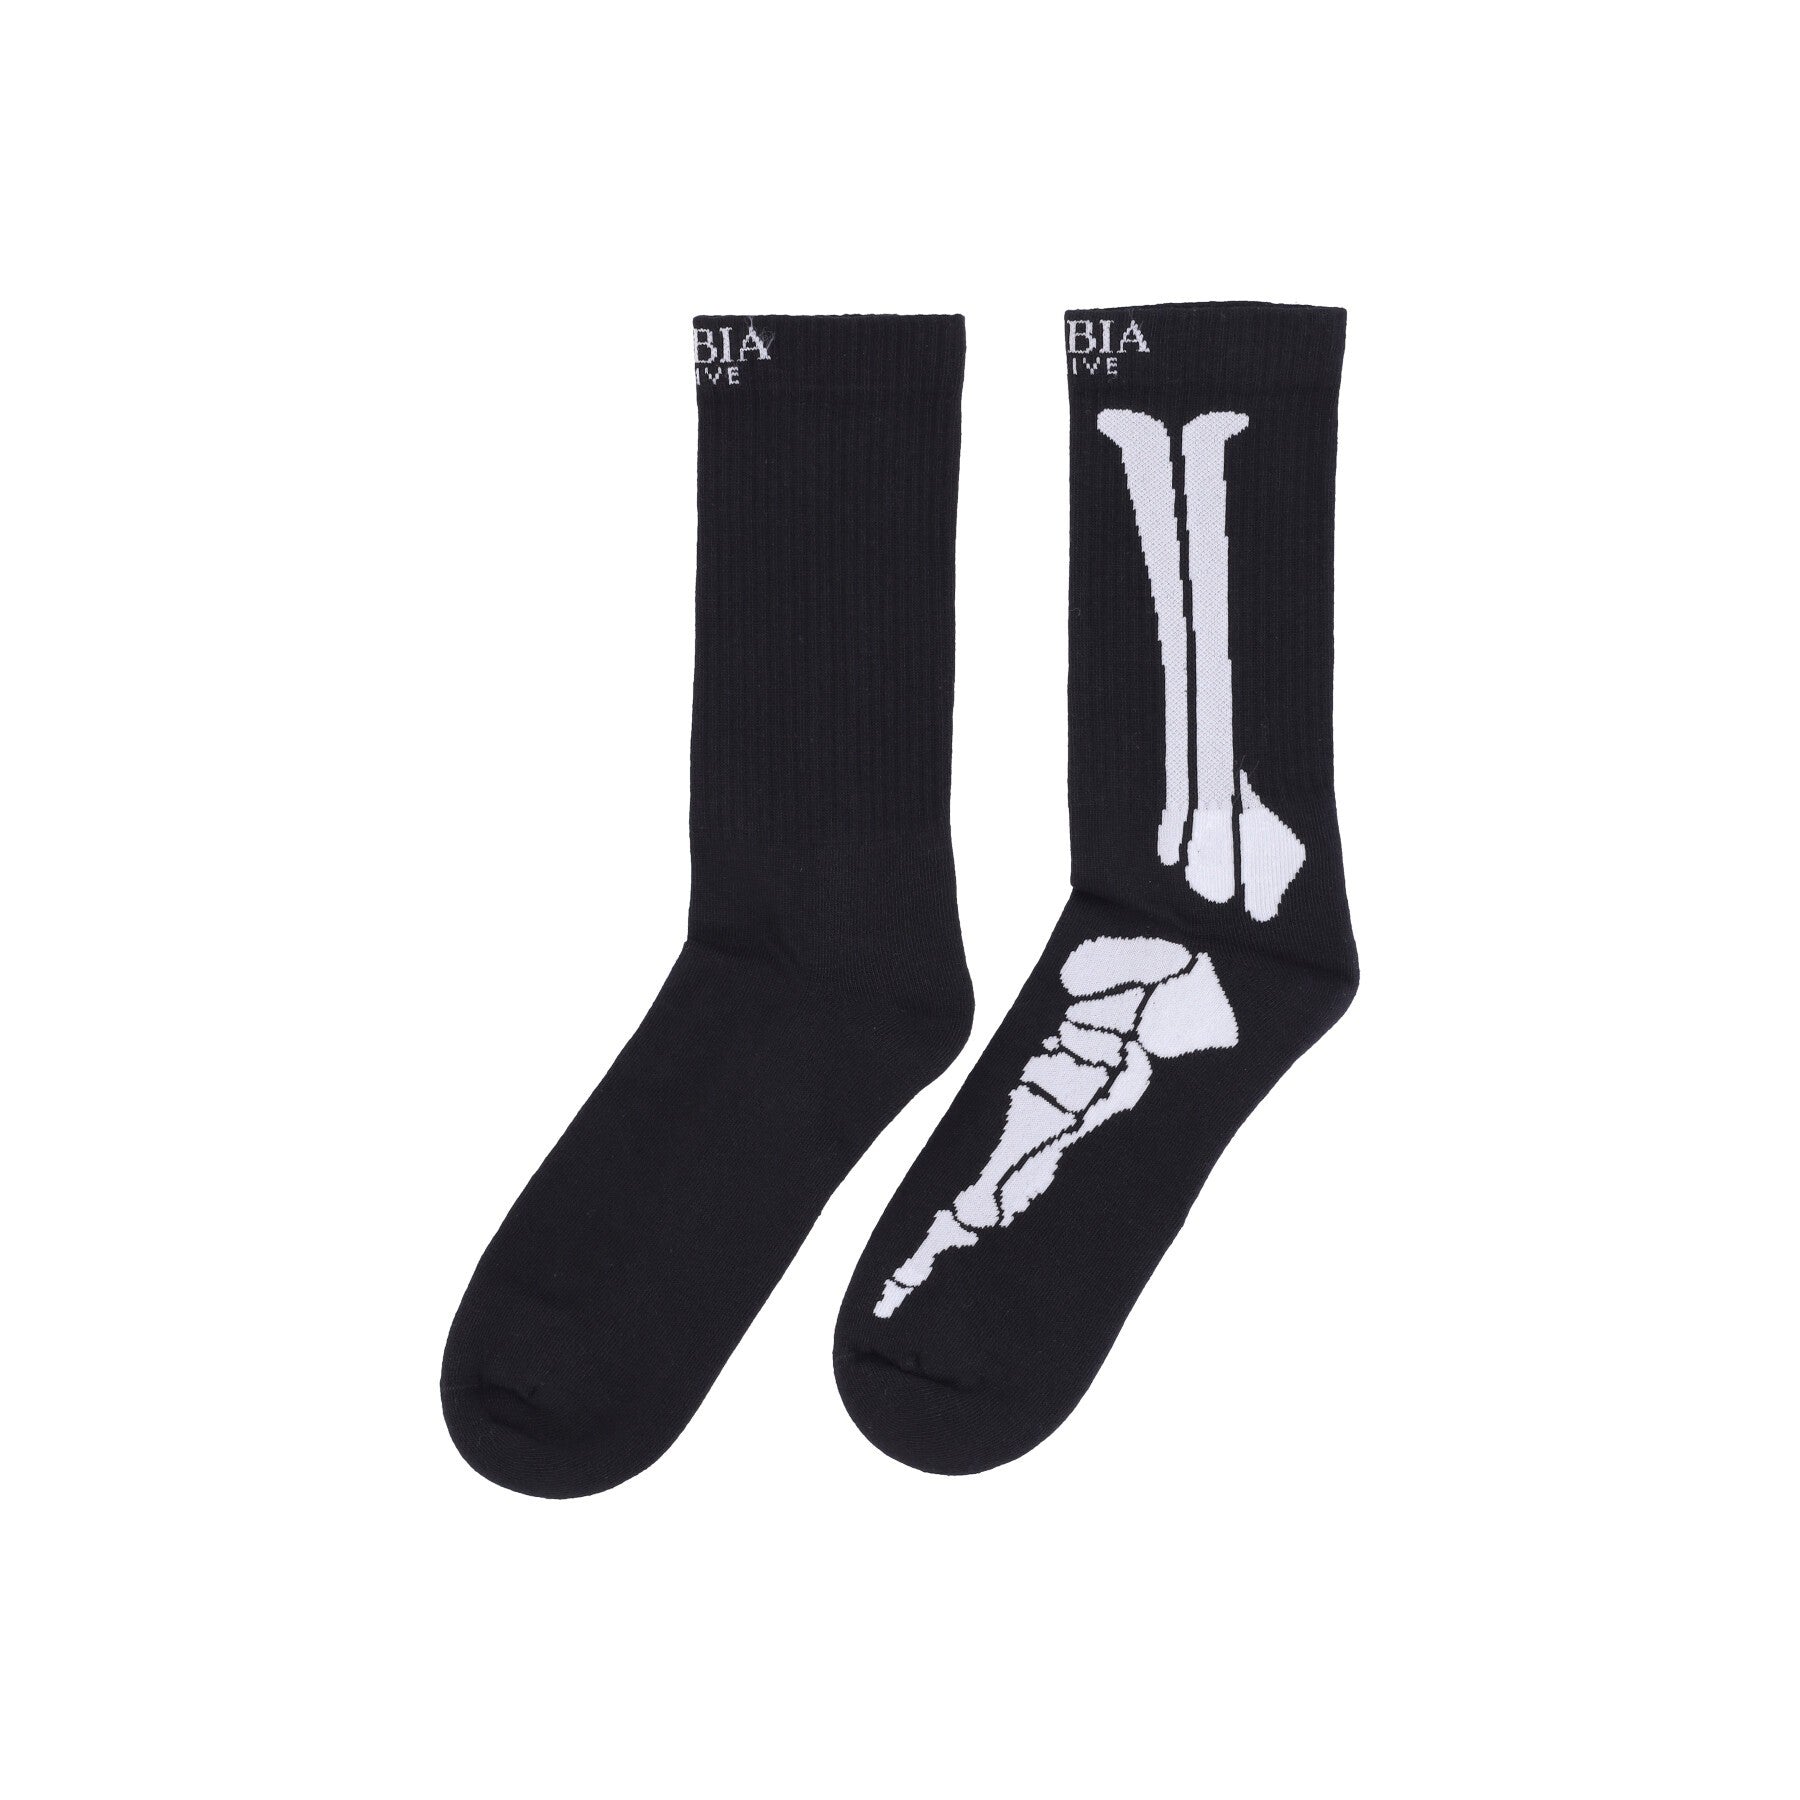 Phobia, Calza Media Uomo Bones Socks, Black/white